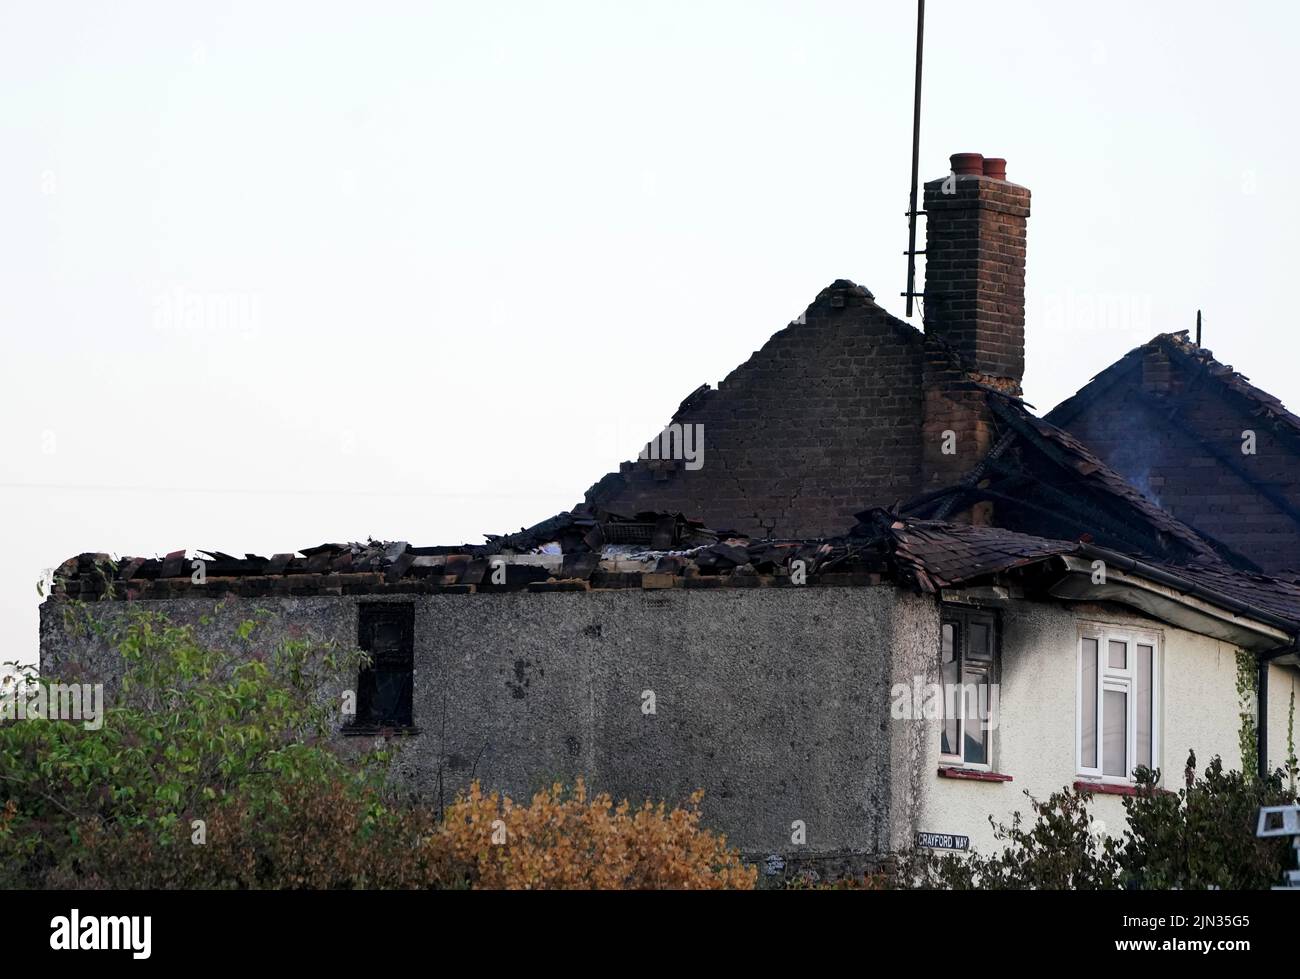 La escena en Crayford Way, Crayford, al sureste de Londres, donde los bomberos han estado enfrentando un incendio que rasgó a través de cuatro casas adosadas Fecha de la foto: Lunes 8 de agosto de 2022. Foto de stock